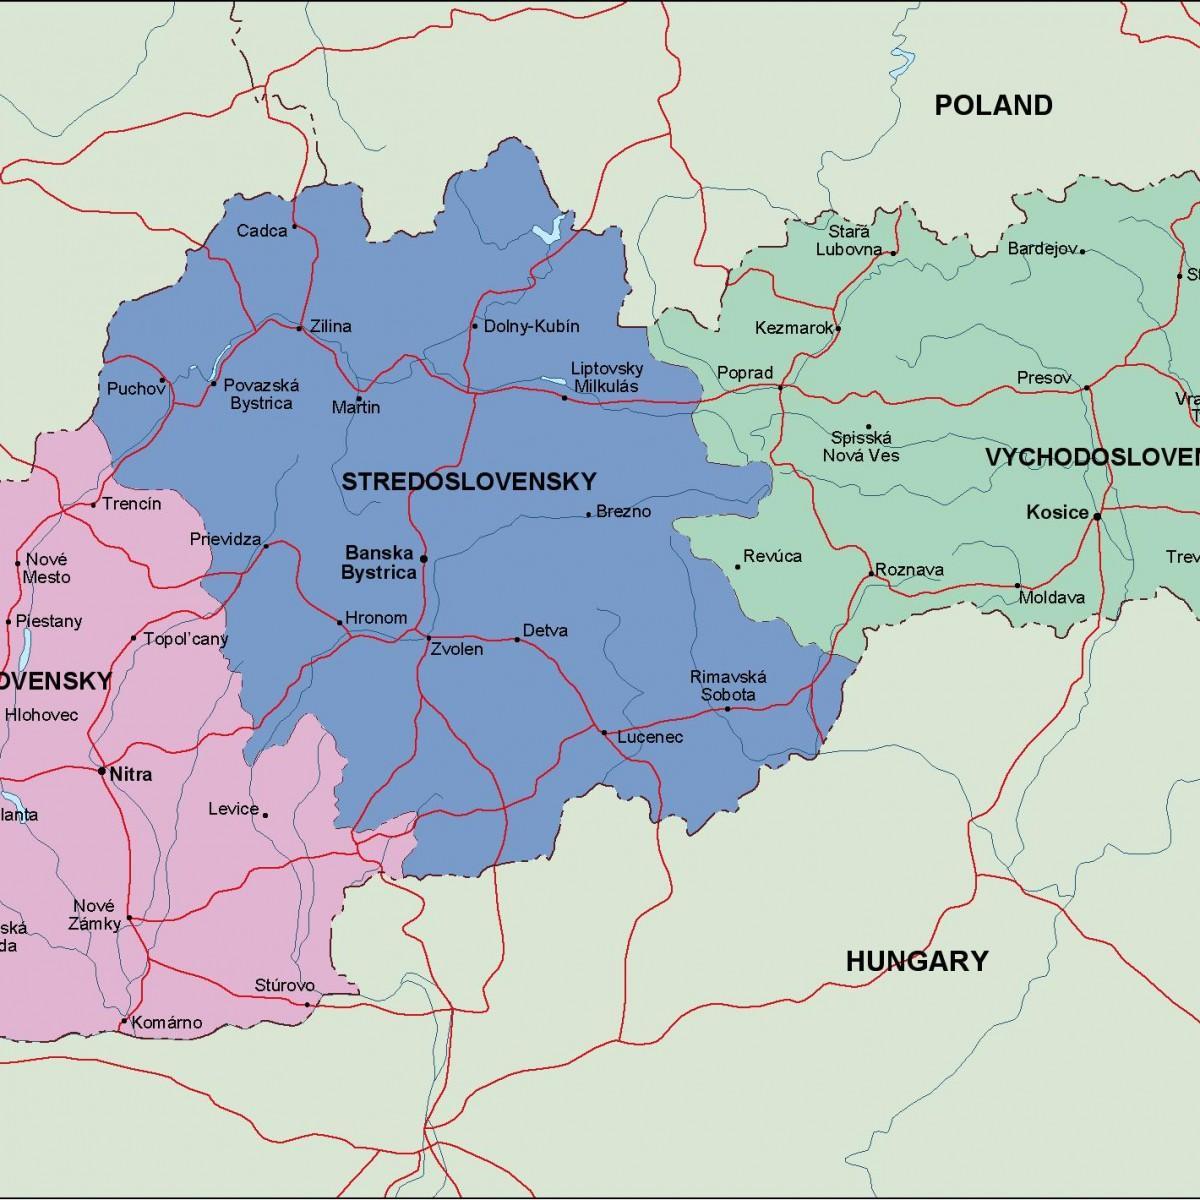 Slovakien politiska karta - Karta över Slovakien politiska (Östra